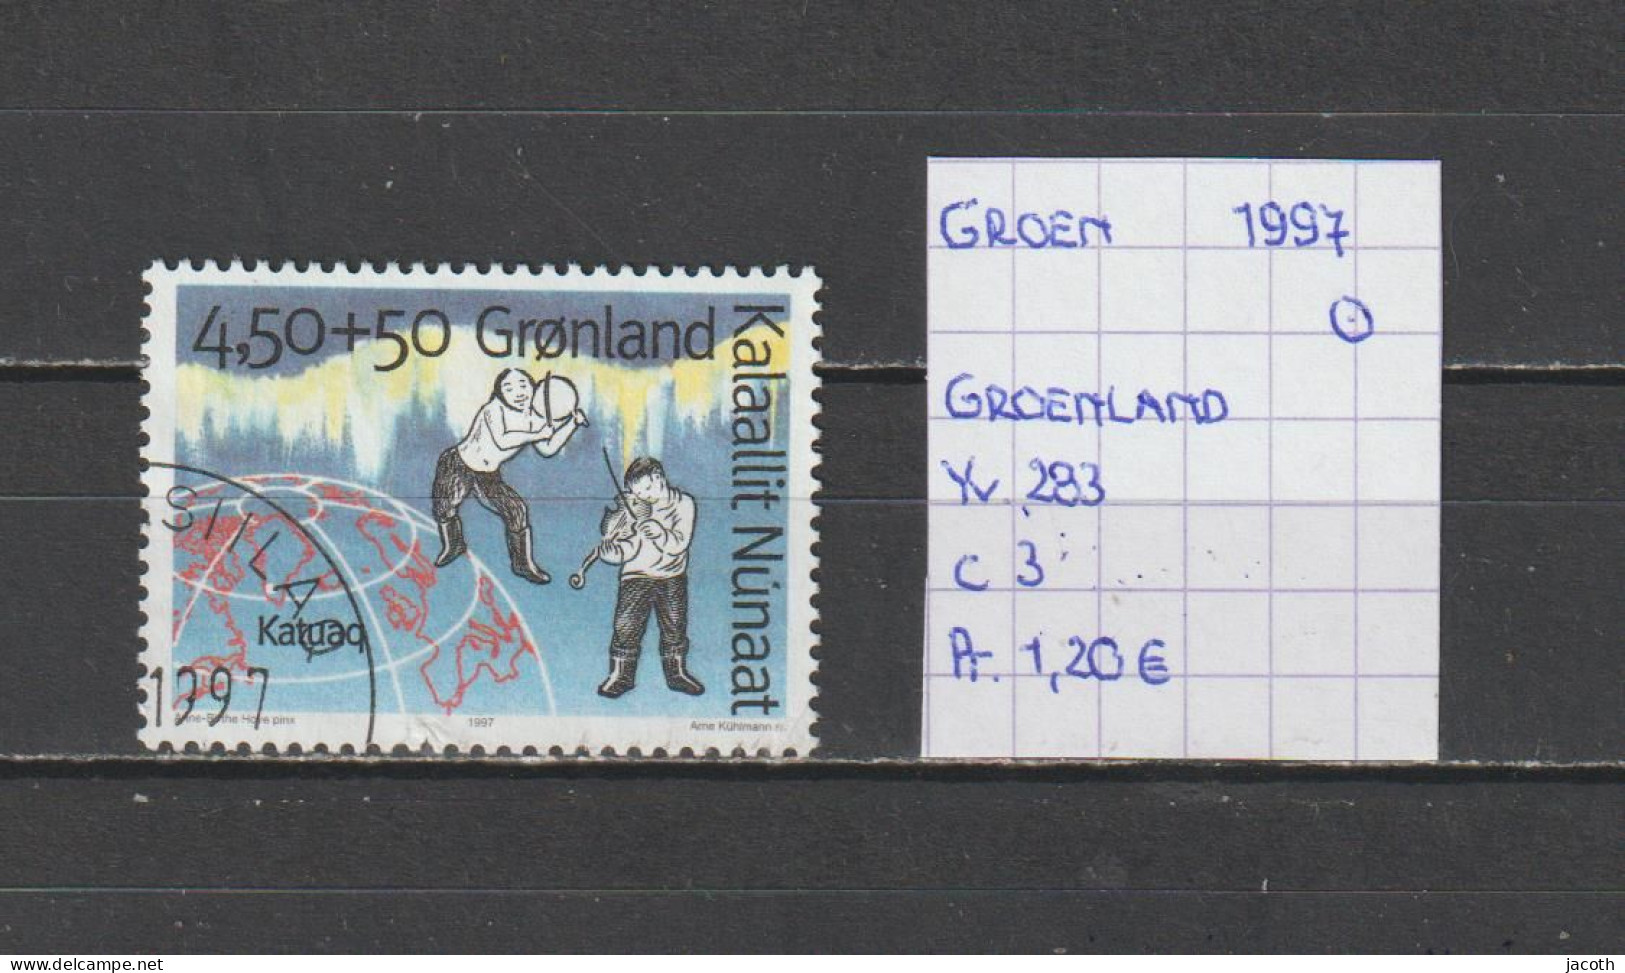 (TJ) Groenland 1997 - YT 283 (gest./obl./used) - Gebruikt